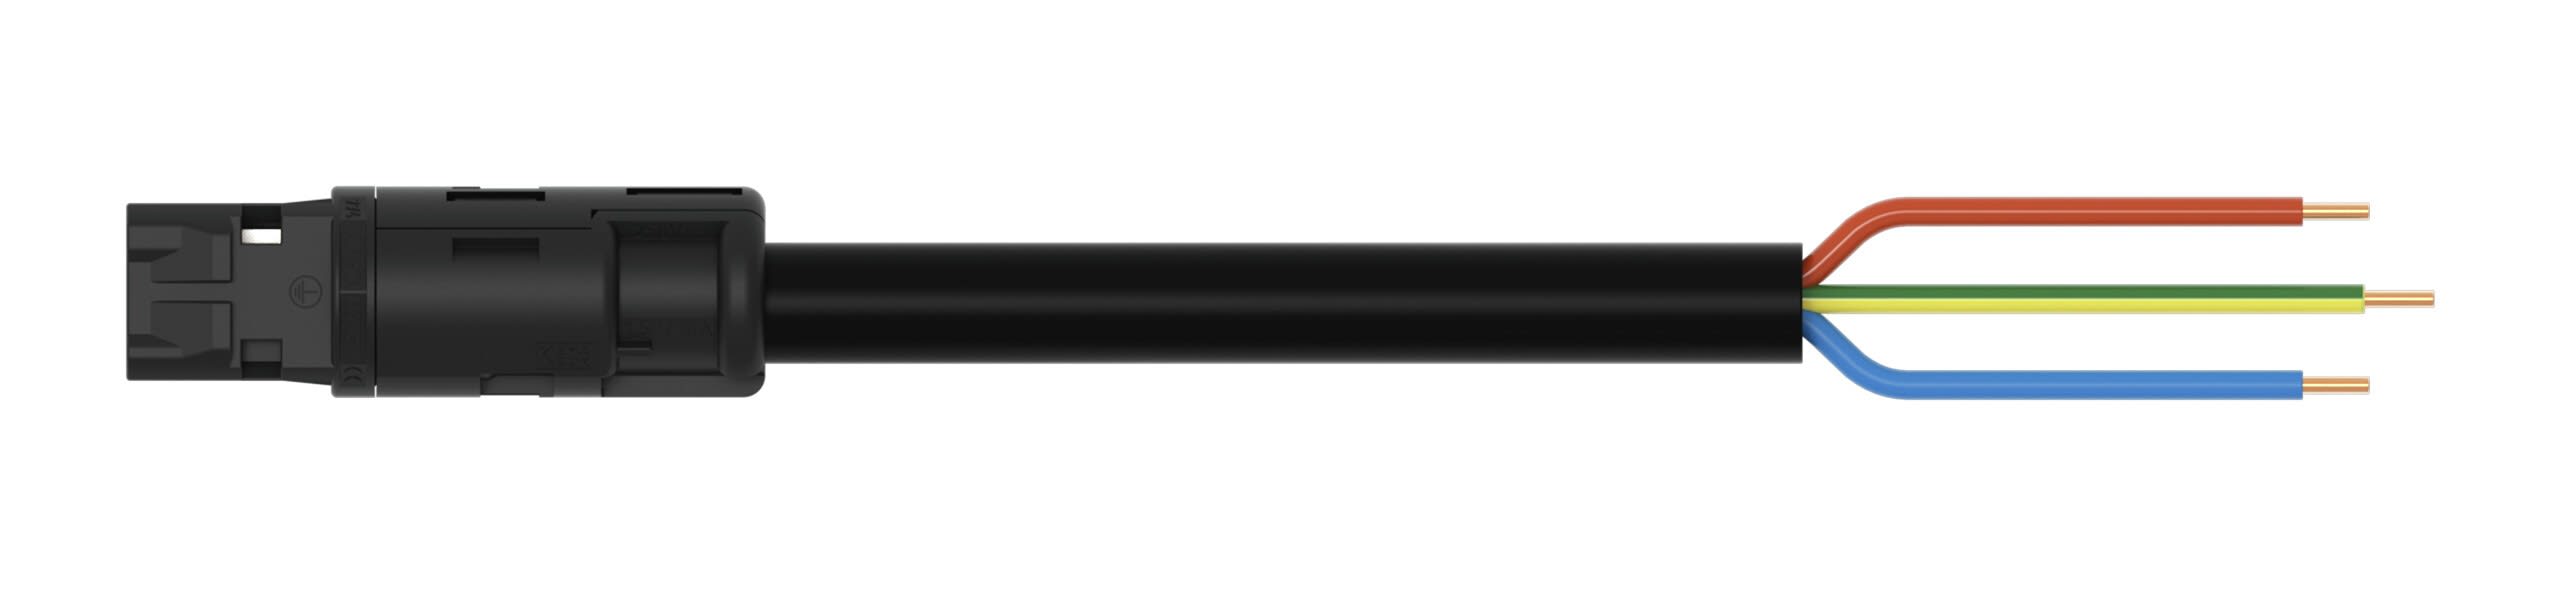 Wago Contact - Câble de raccordement précâblé Eca Connecteur femelle/extrémité libre, noir